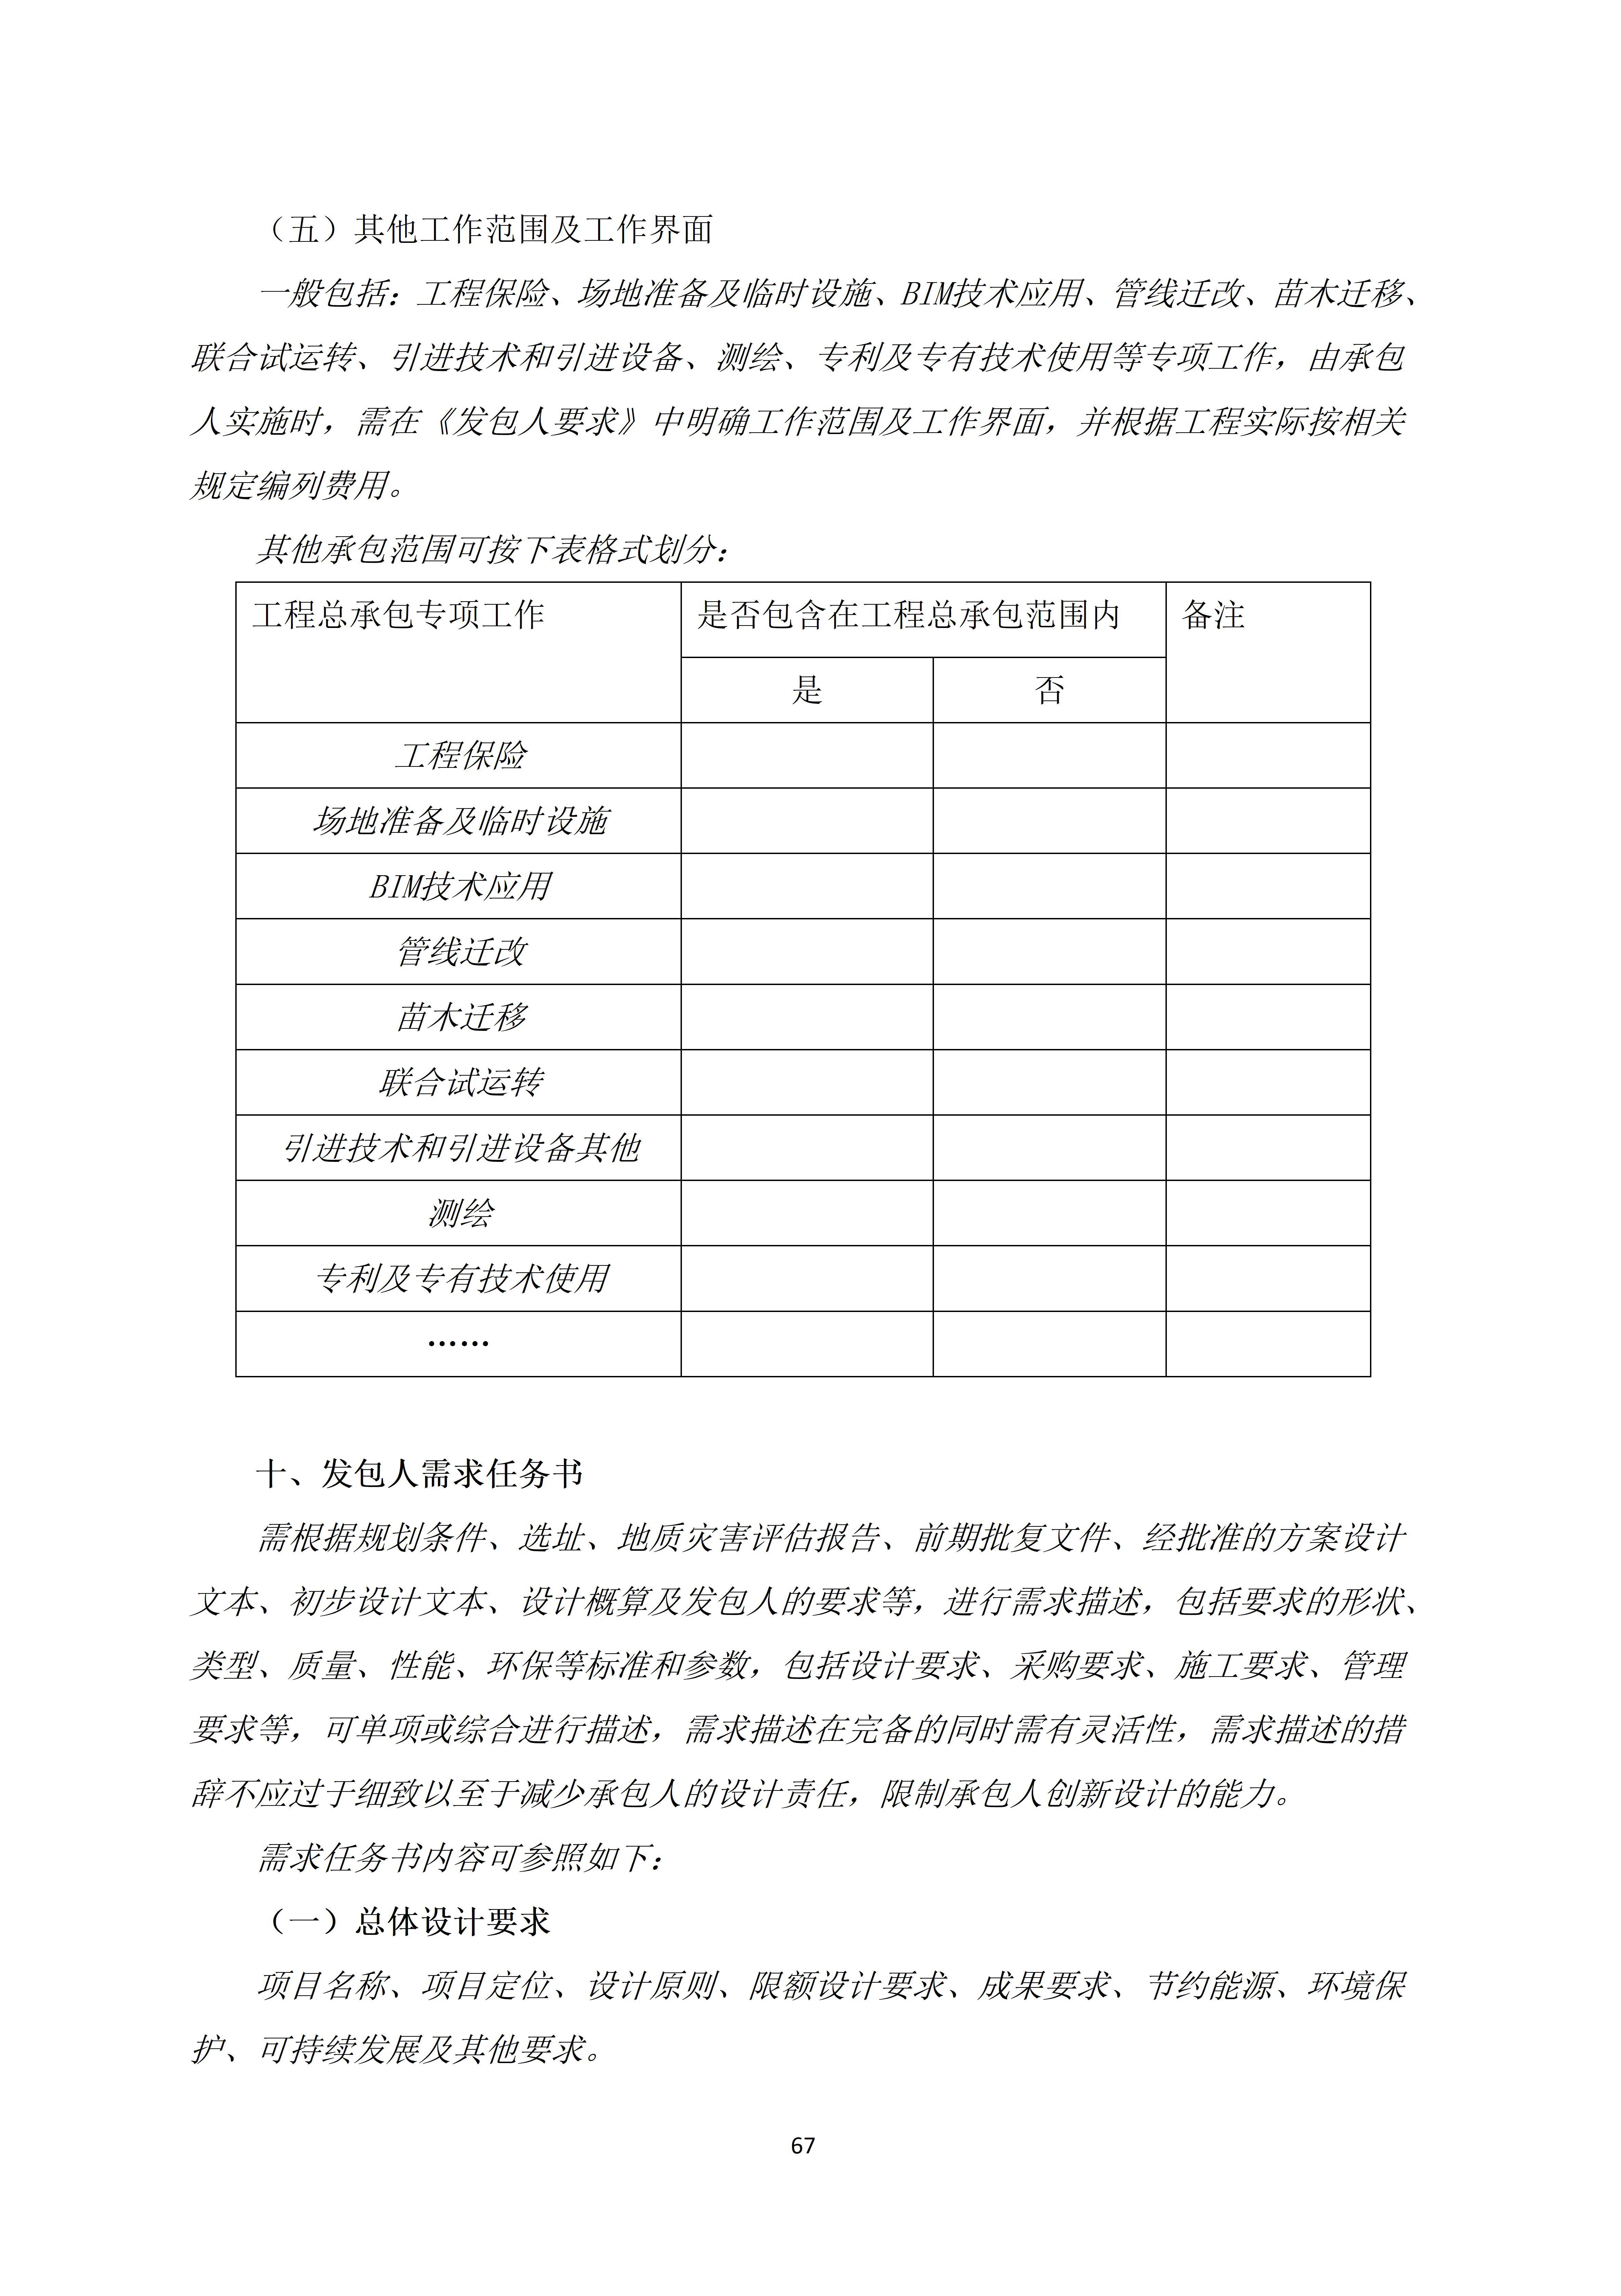 浙江发布房屋建筑和市政基础设施工程总承包招标文件示范文本(2022版)